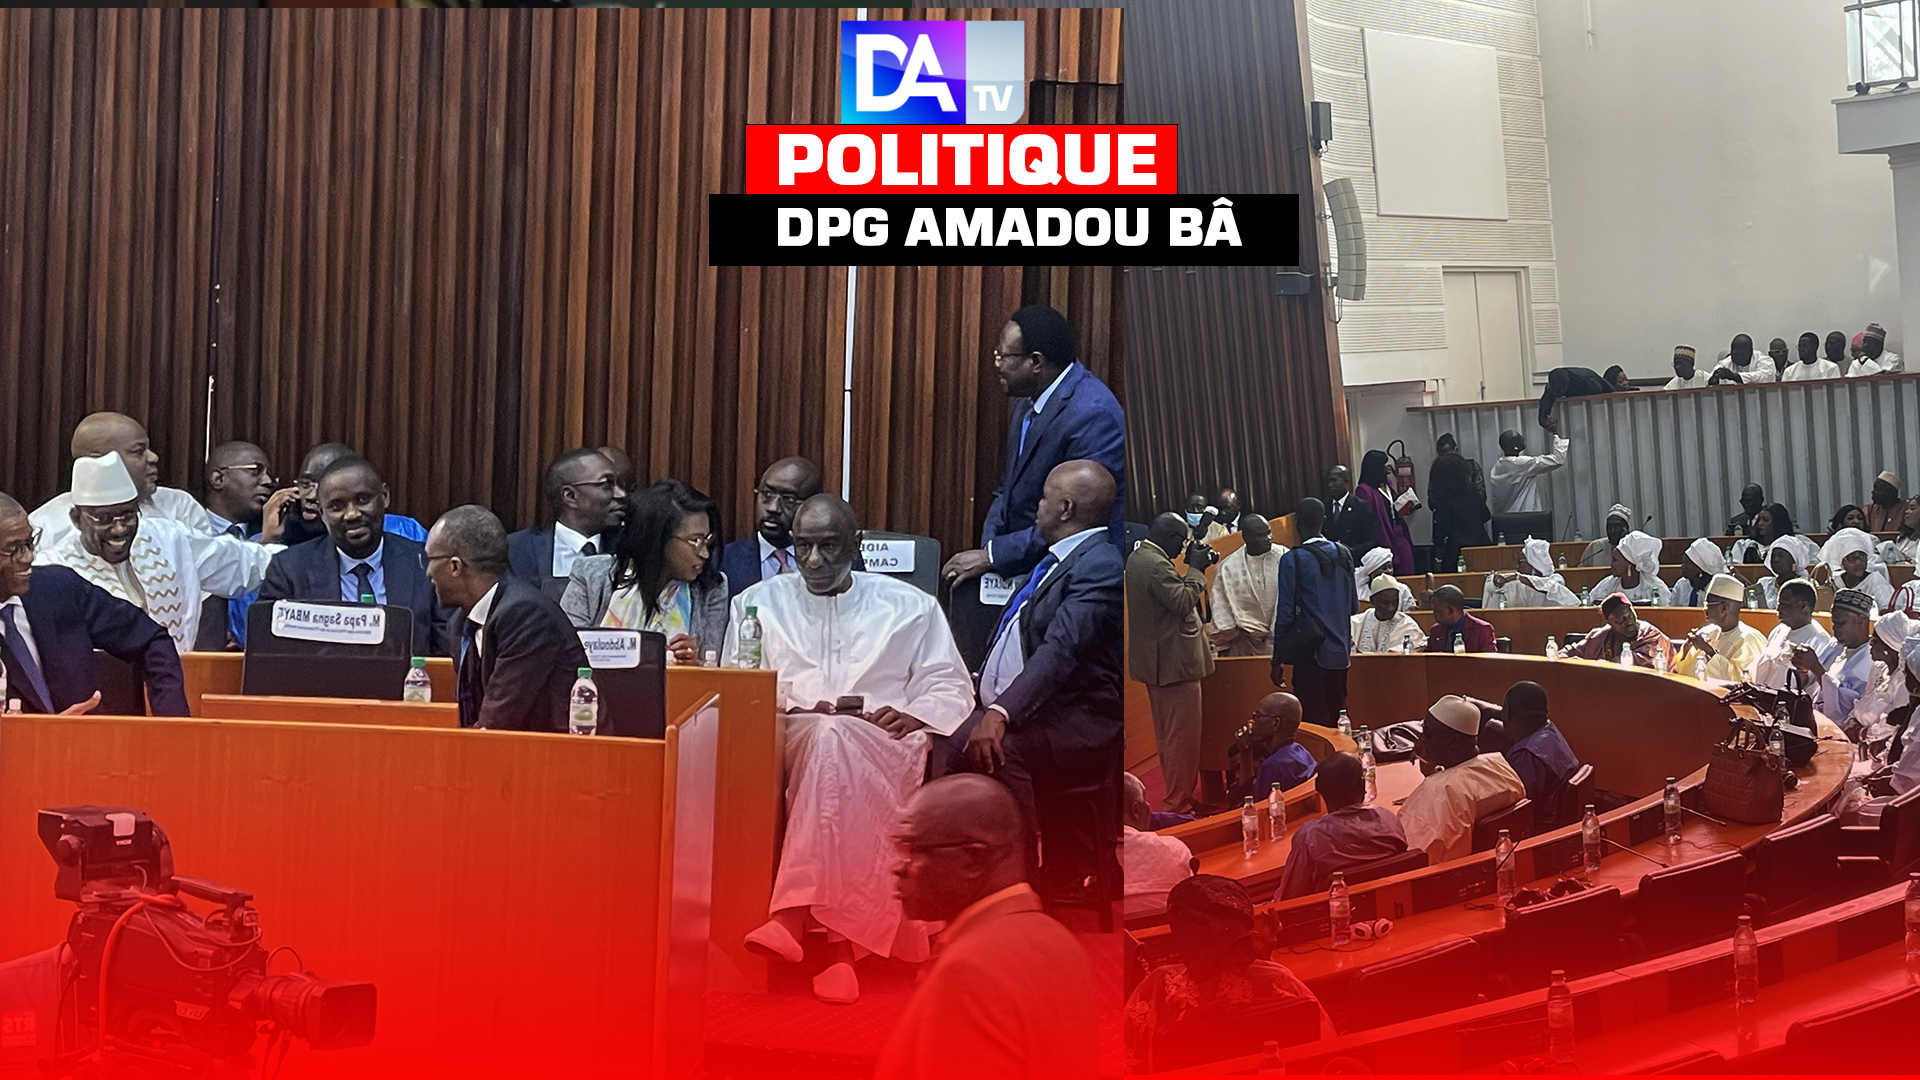 Assemblée Nationale / DPG du Premier ministre Amadou Bâ : Tous les membres du gouvernement sont déjà en place! Les députés prêts pour échanger avec le PM